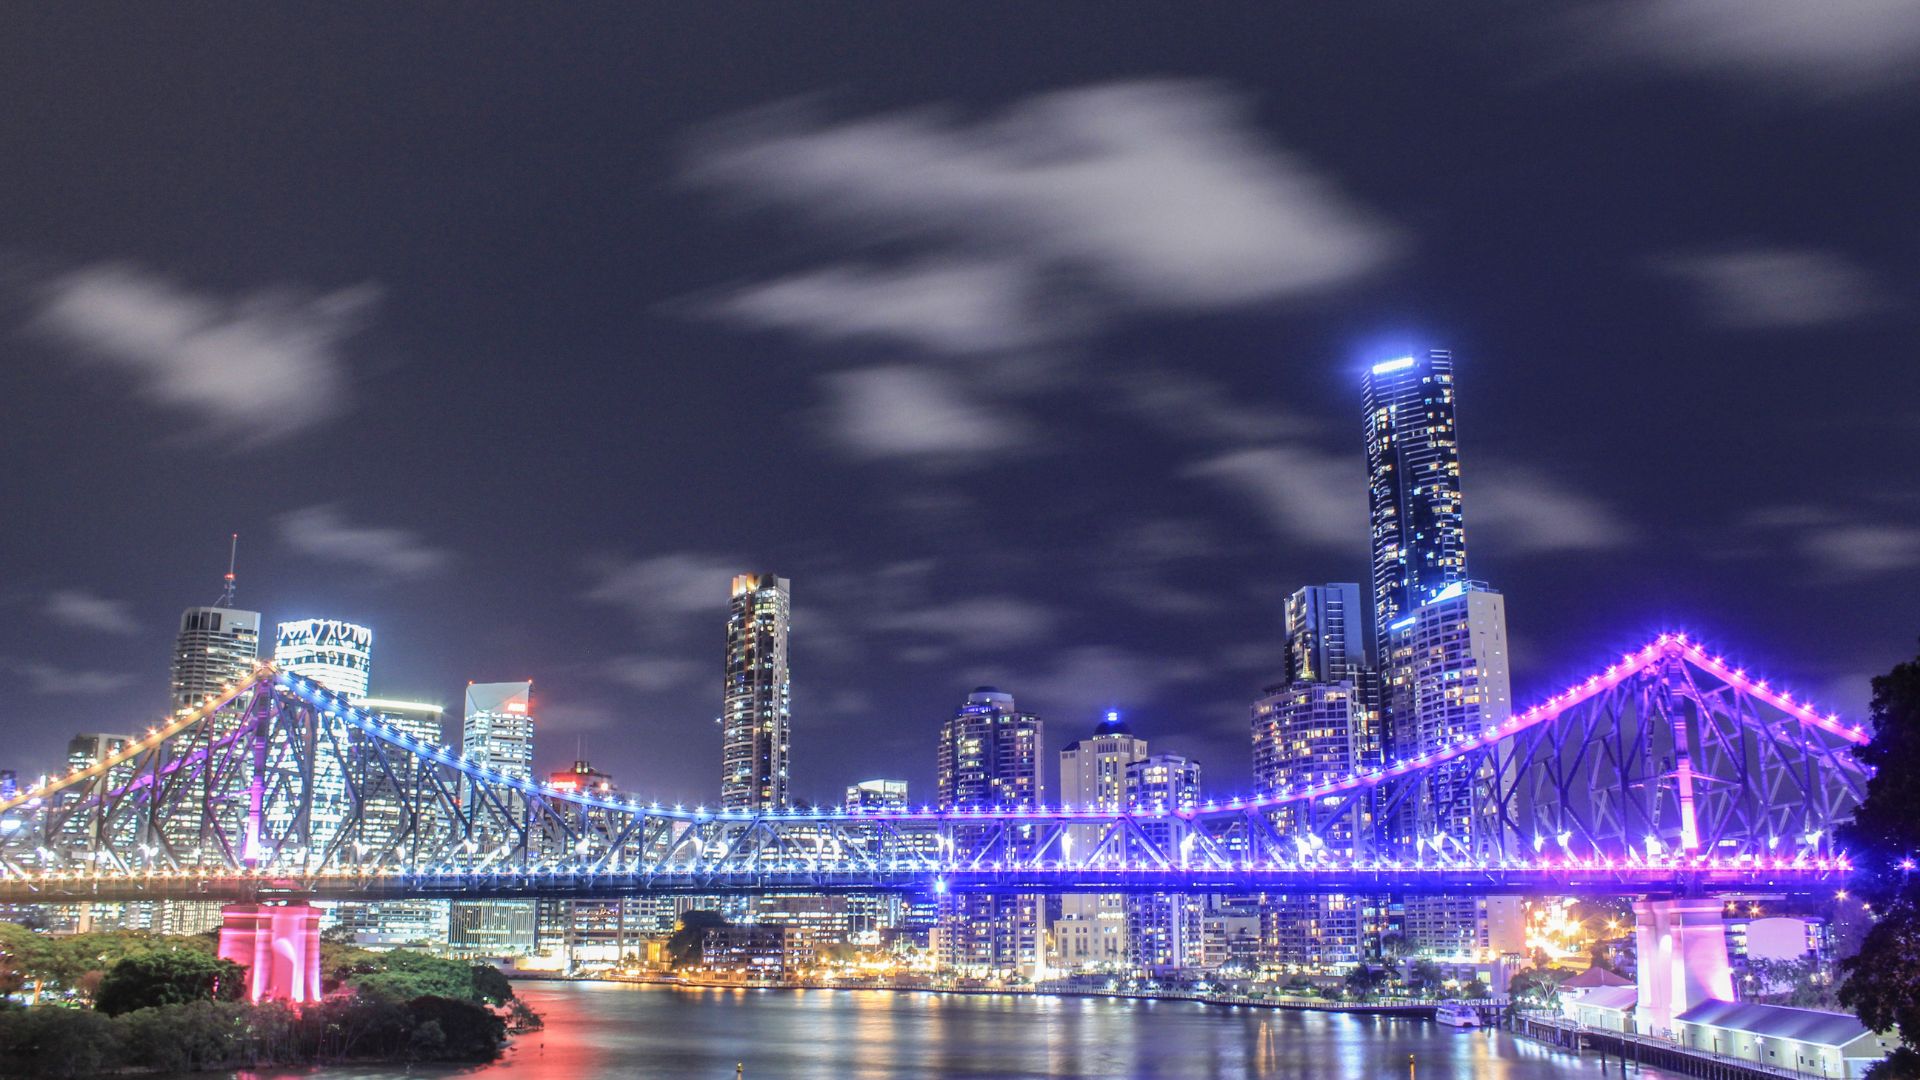 Brisbane’s NYE Bash at Iconic Story Bridge